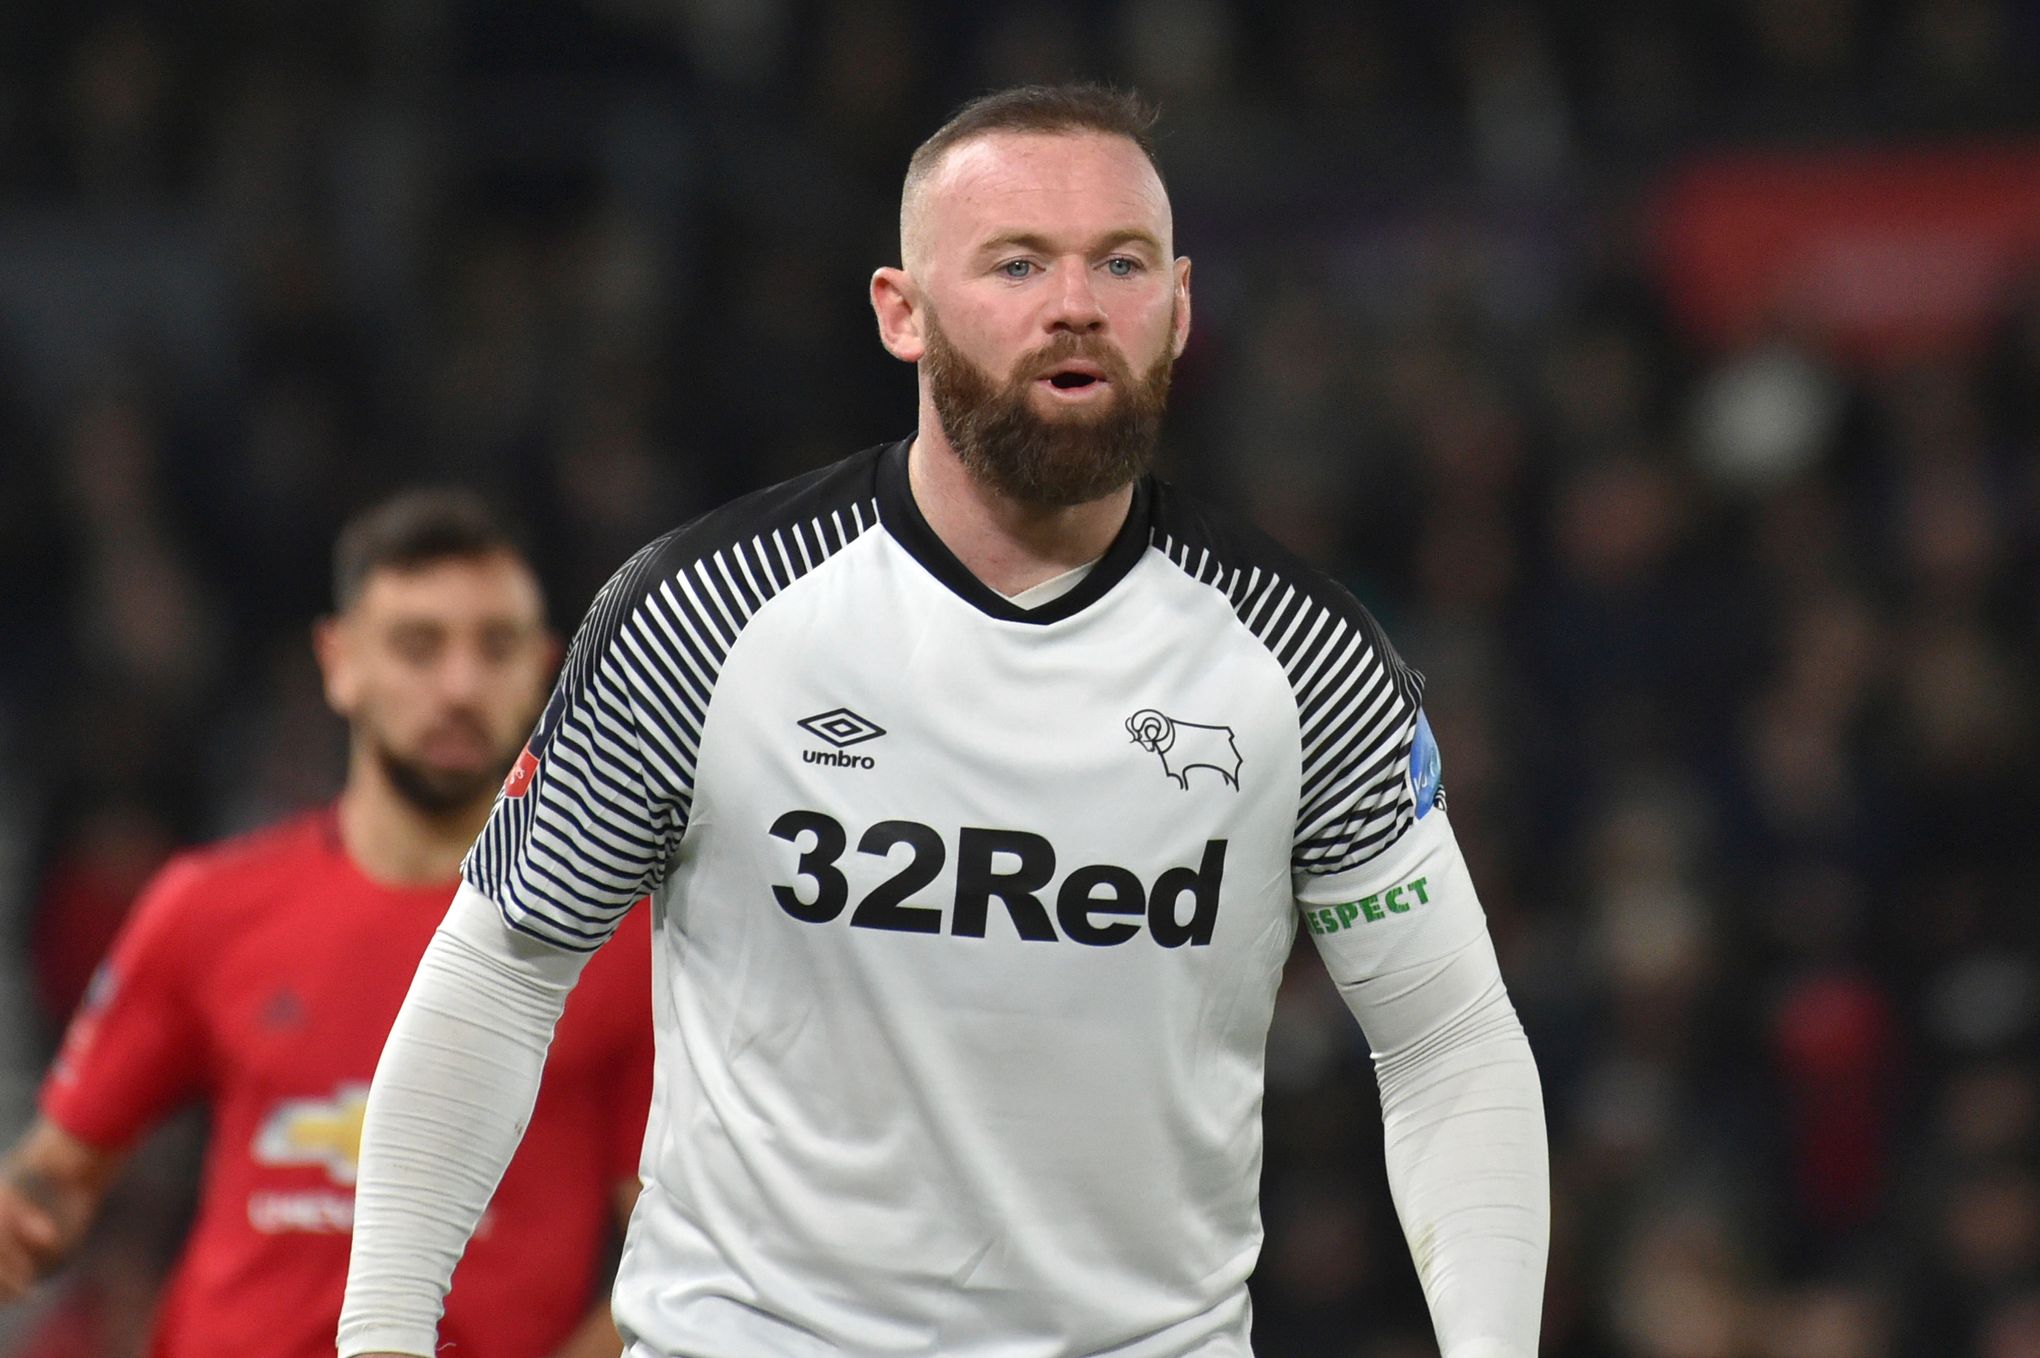 Derby County de Rooney despromovido em final de jogo dramático